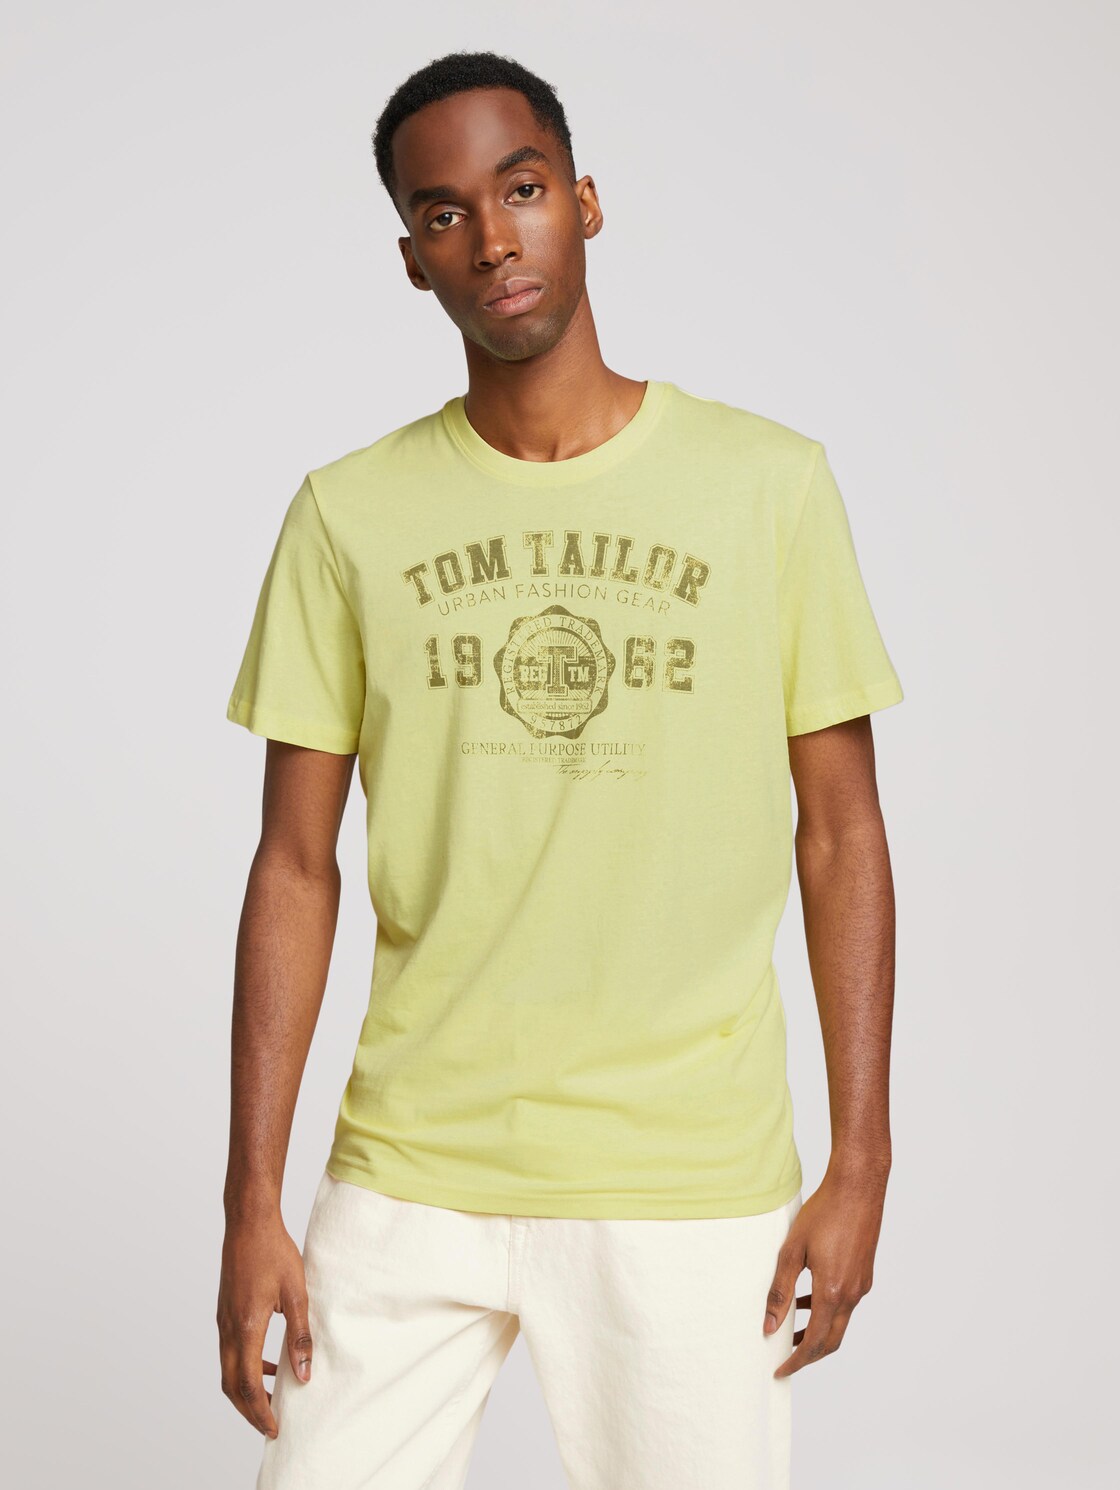 TOM TAILOR Herren T-Shirt mit Print, gelb, Gr. XXL,